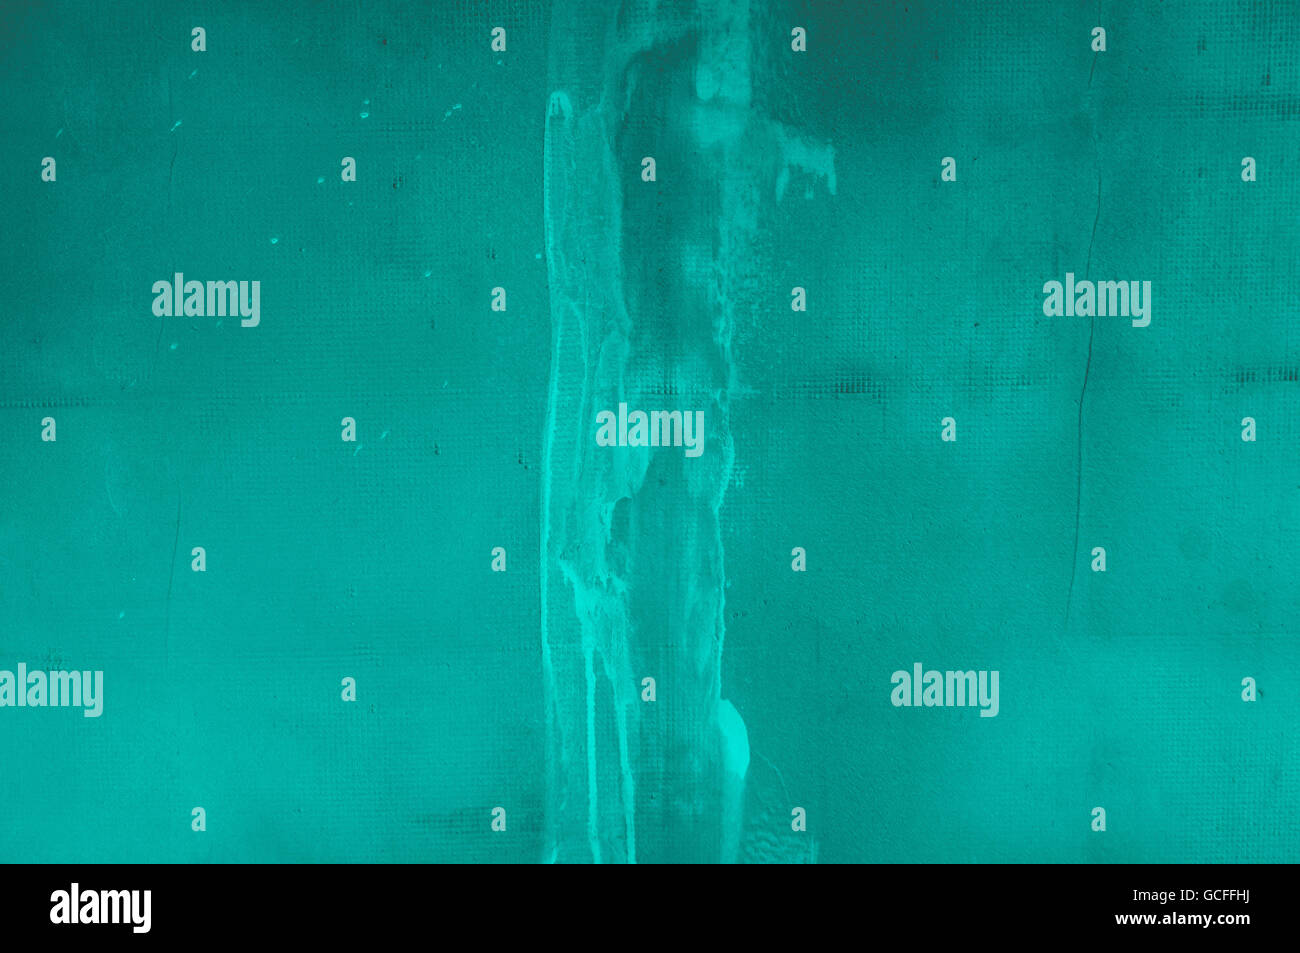 Türkis grau Graustufen Wand Hintergrund mit groben fügen, konkrete Stuck Putz mit Matrix wie Punktraster mit Kratzern Stockfoto